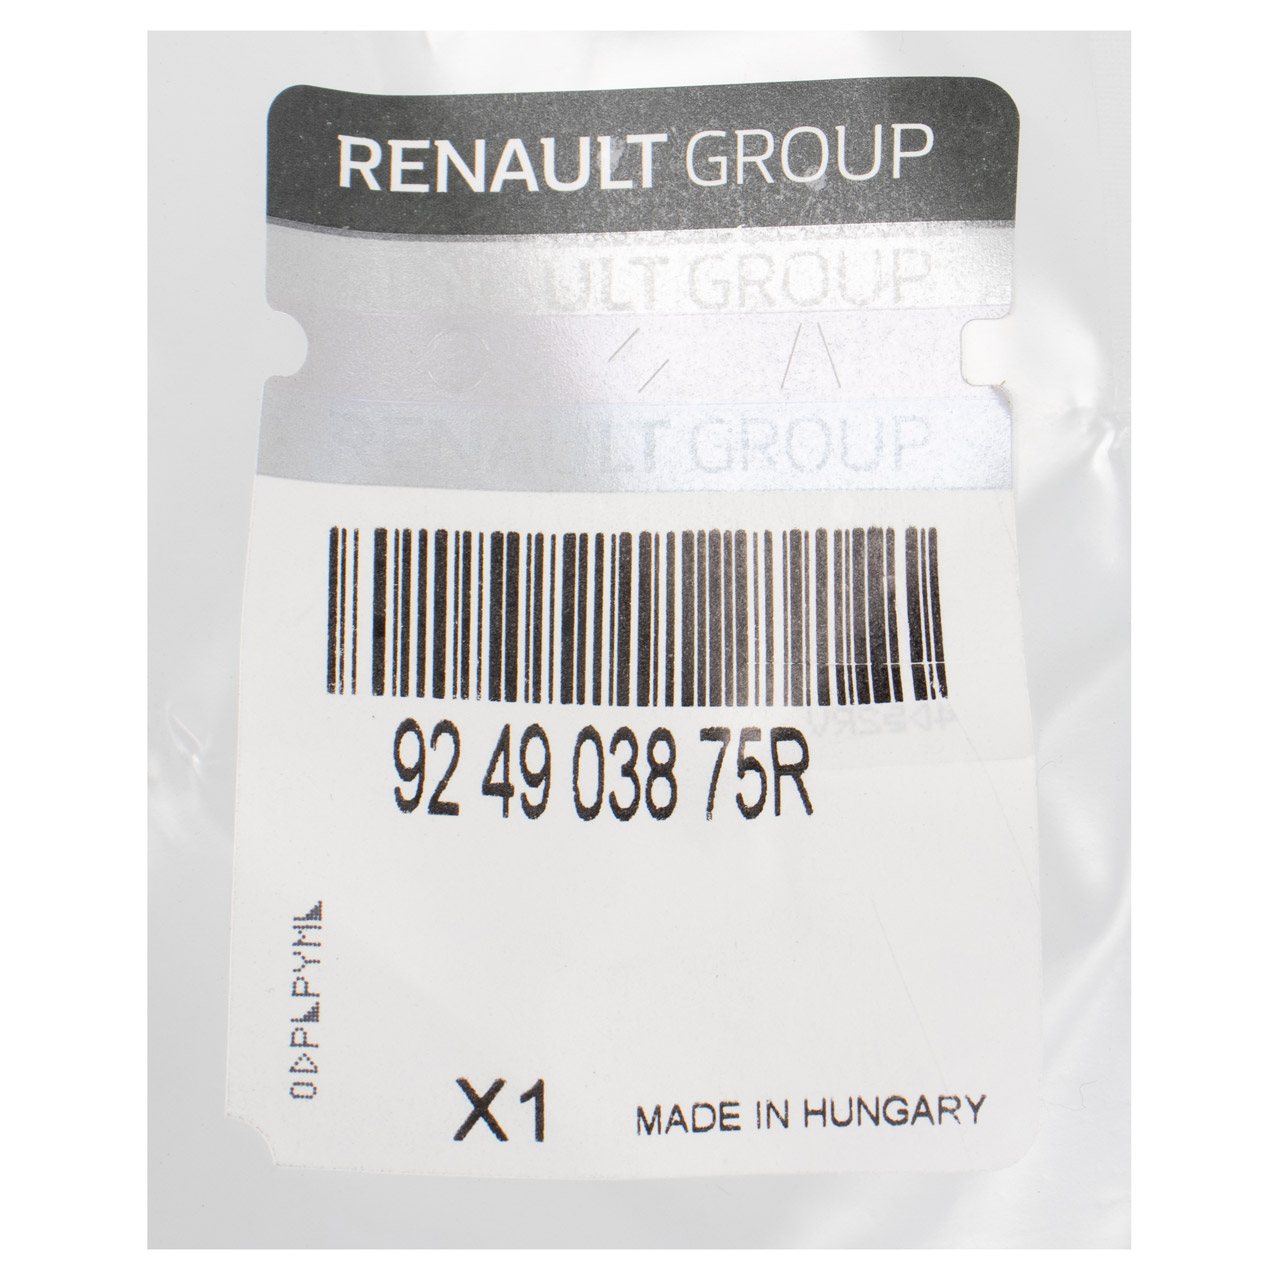 ORIGINAL Renault Kältemittelleitung Hochdruck Trafic 3 ab Baujahr 12.2015 924903875R